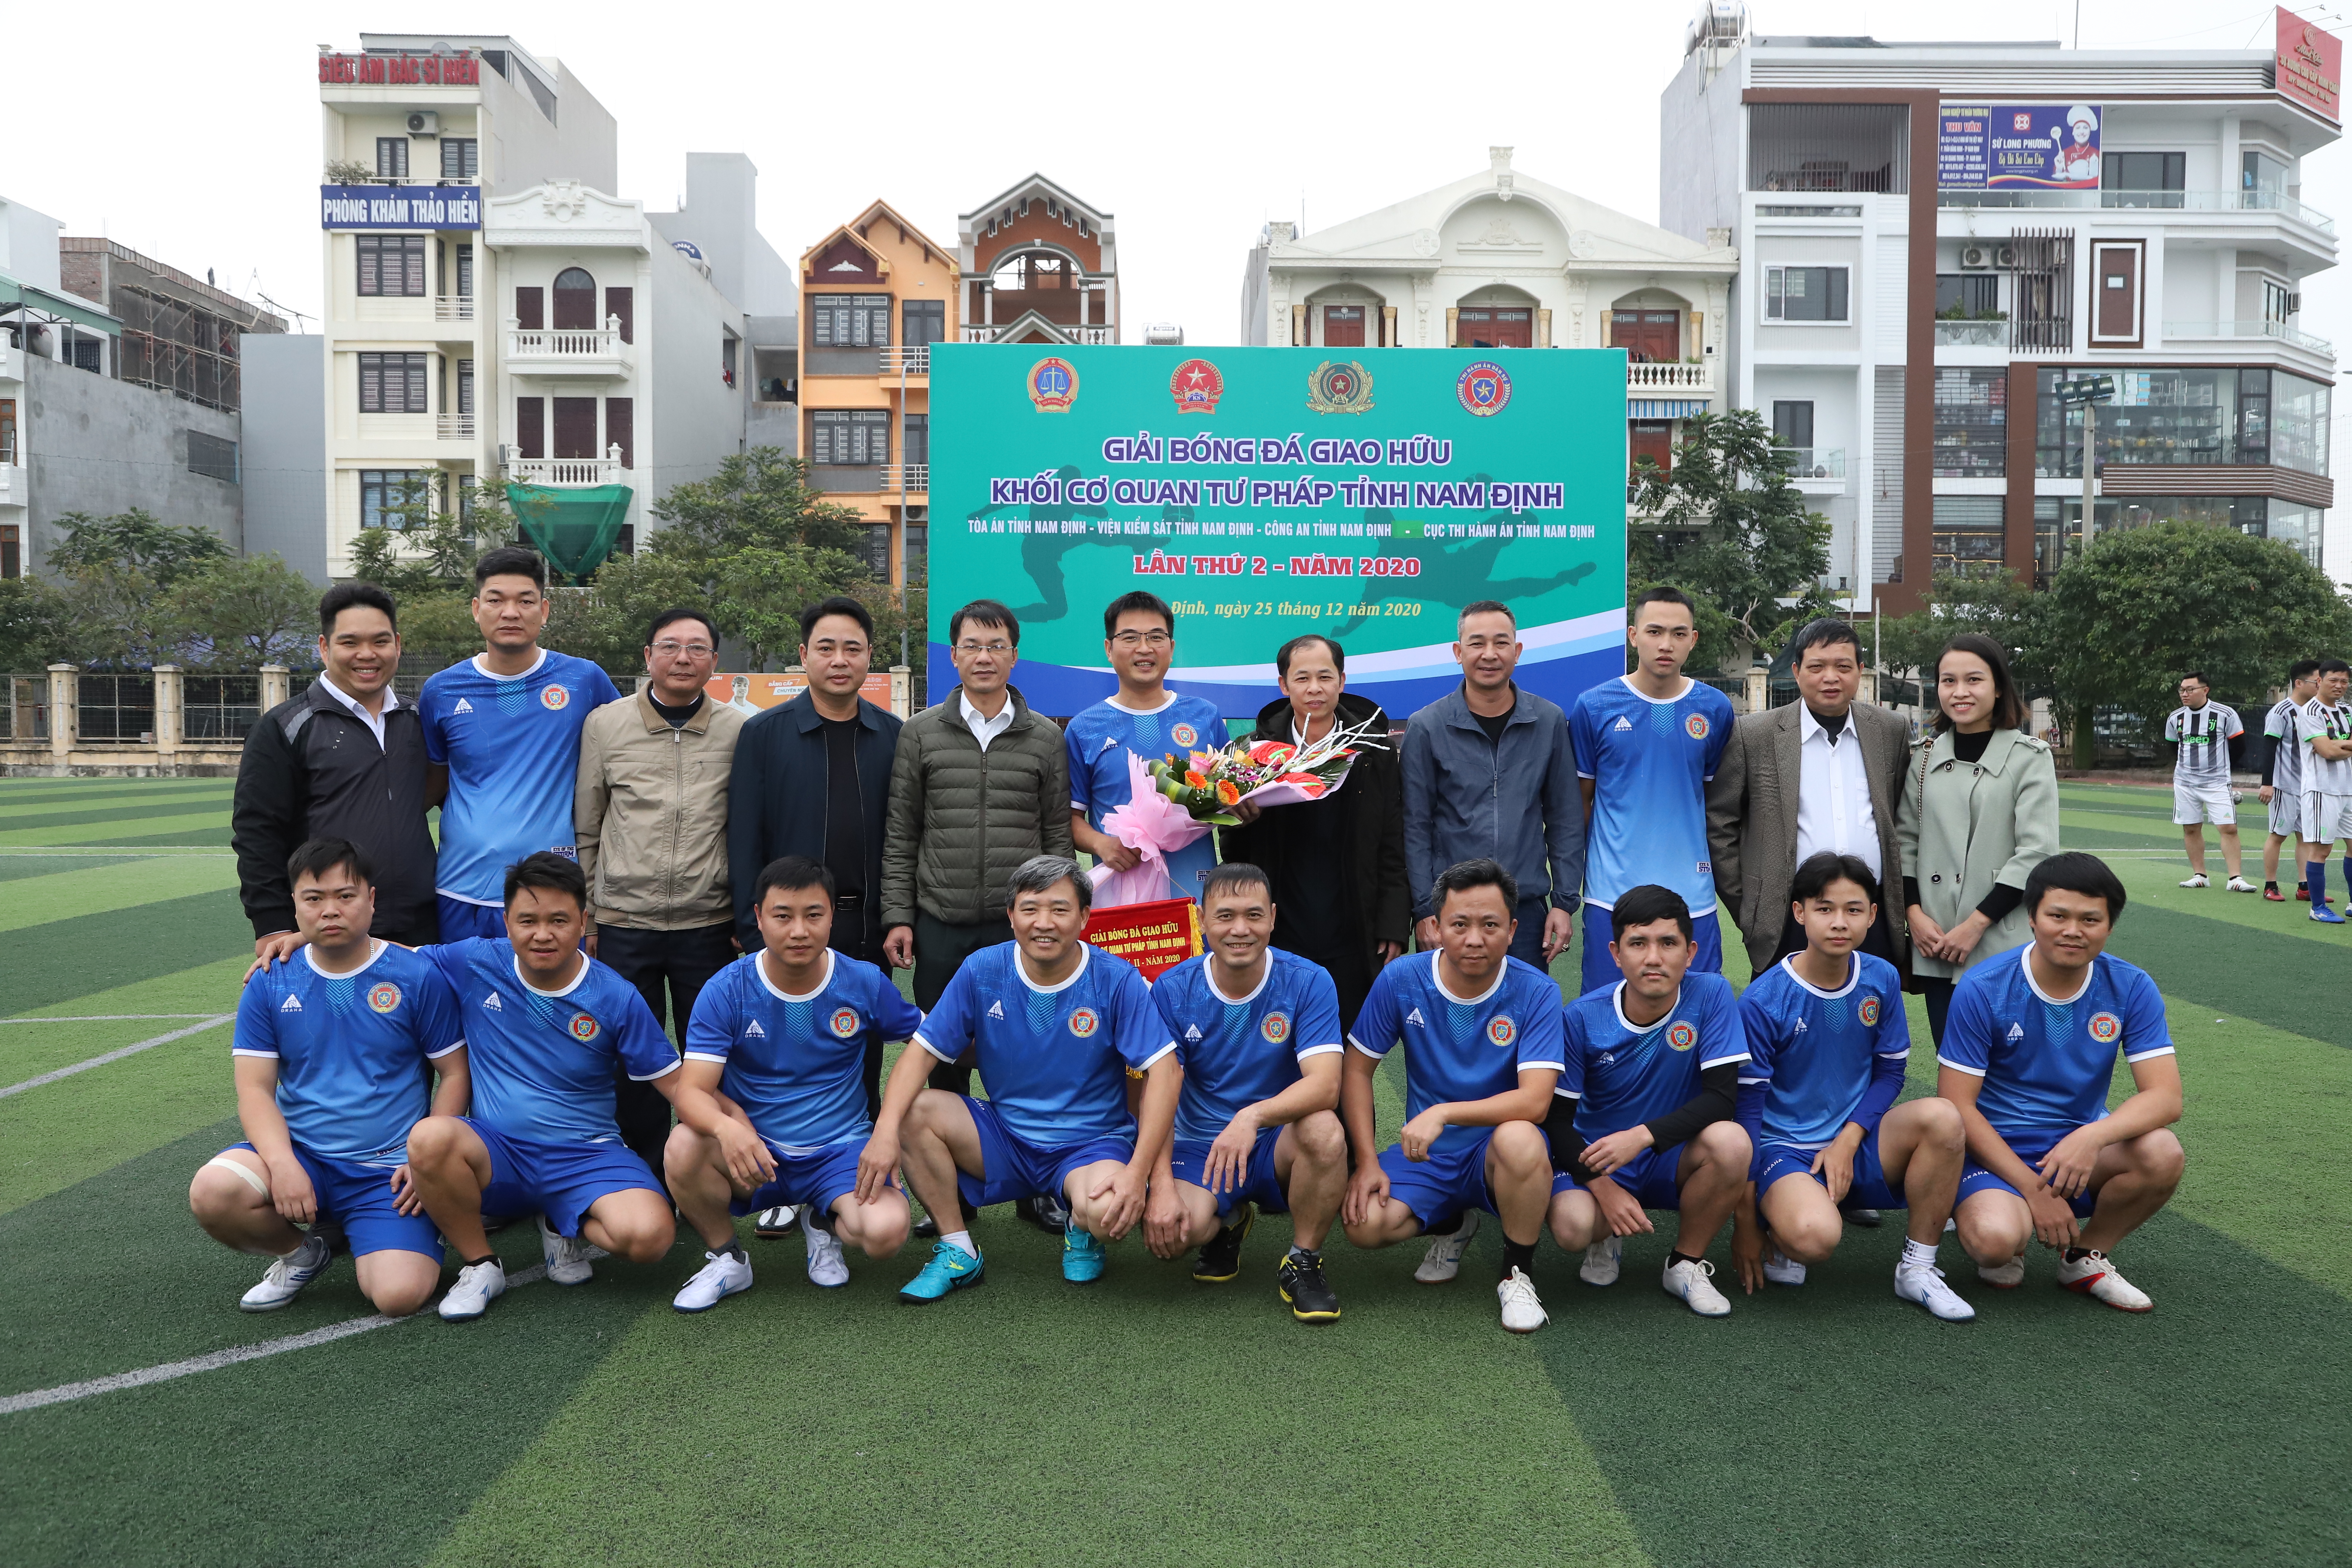 Giải bóng đá giao hữu Khối các cơ quan tư pháp tỉnh Nam Định lần thứ 2